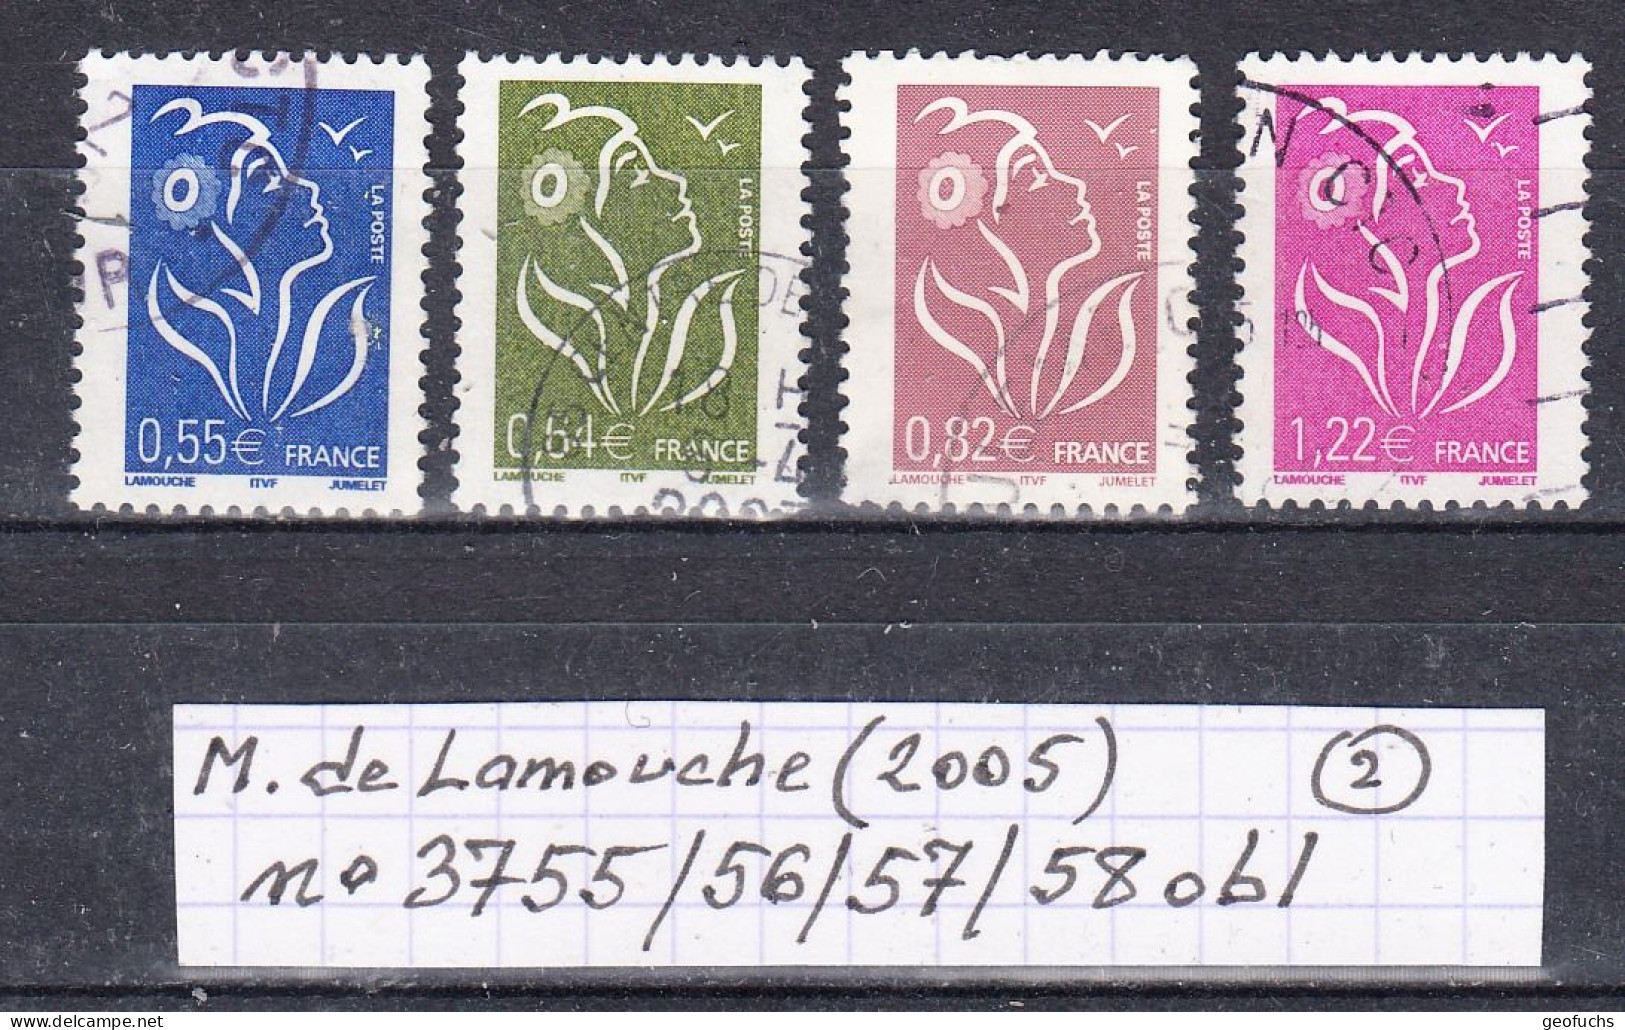 France Marianne De Lamouche (2005) Y/T N° 3755/56/57/58 Oblitérés (lot 2) - 2004-2008 Marianne Of Lamouche